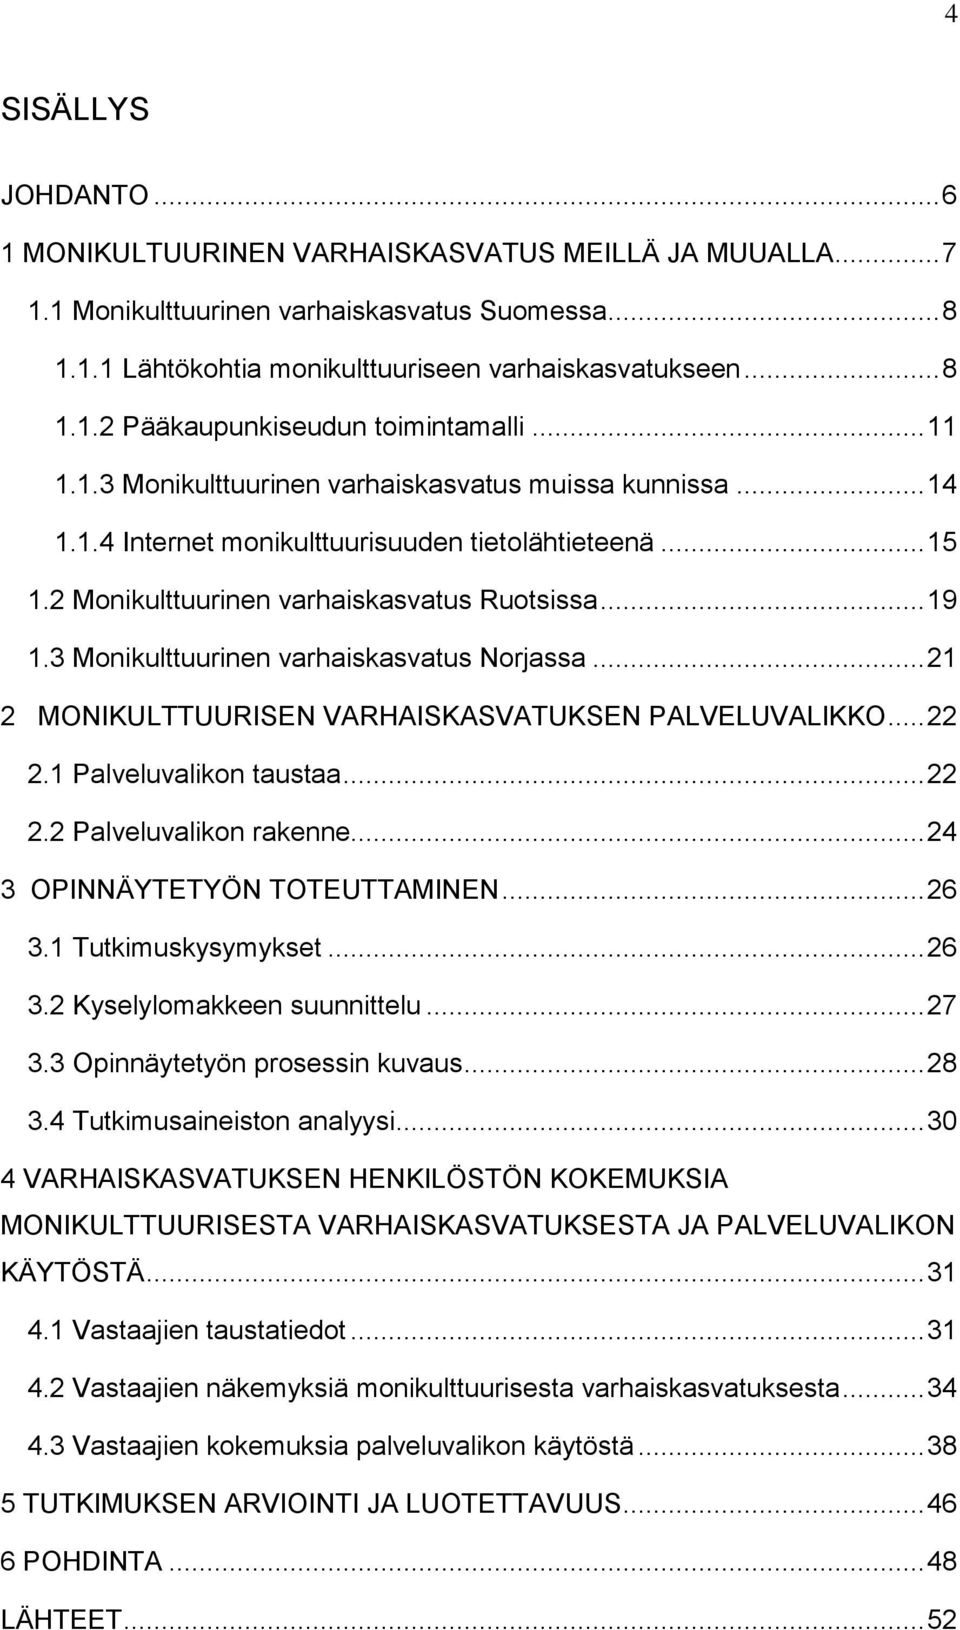 3 Monikulttuurinen varhaiskasvatus Norjassa... 21 2 MONIKULTTUURISEN VARHAISKASVATUKSEN PALVELUVALIKKO... 22 2.1 Palveluvalikon taustaa... 22 2.2 Palveluvalikon rakenne.